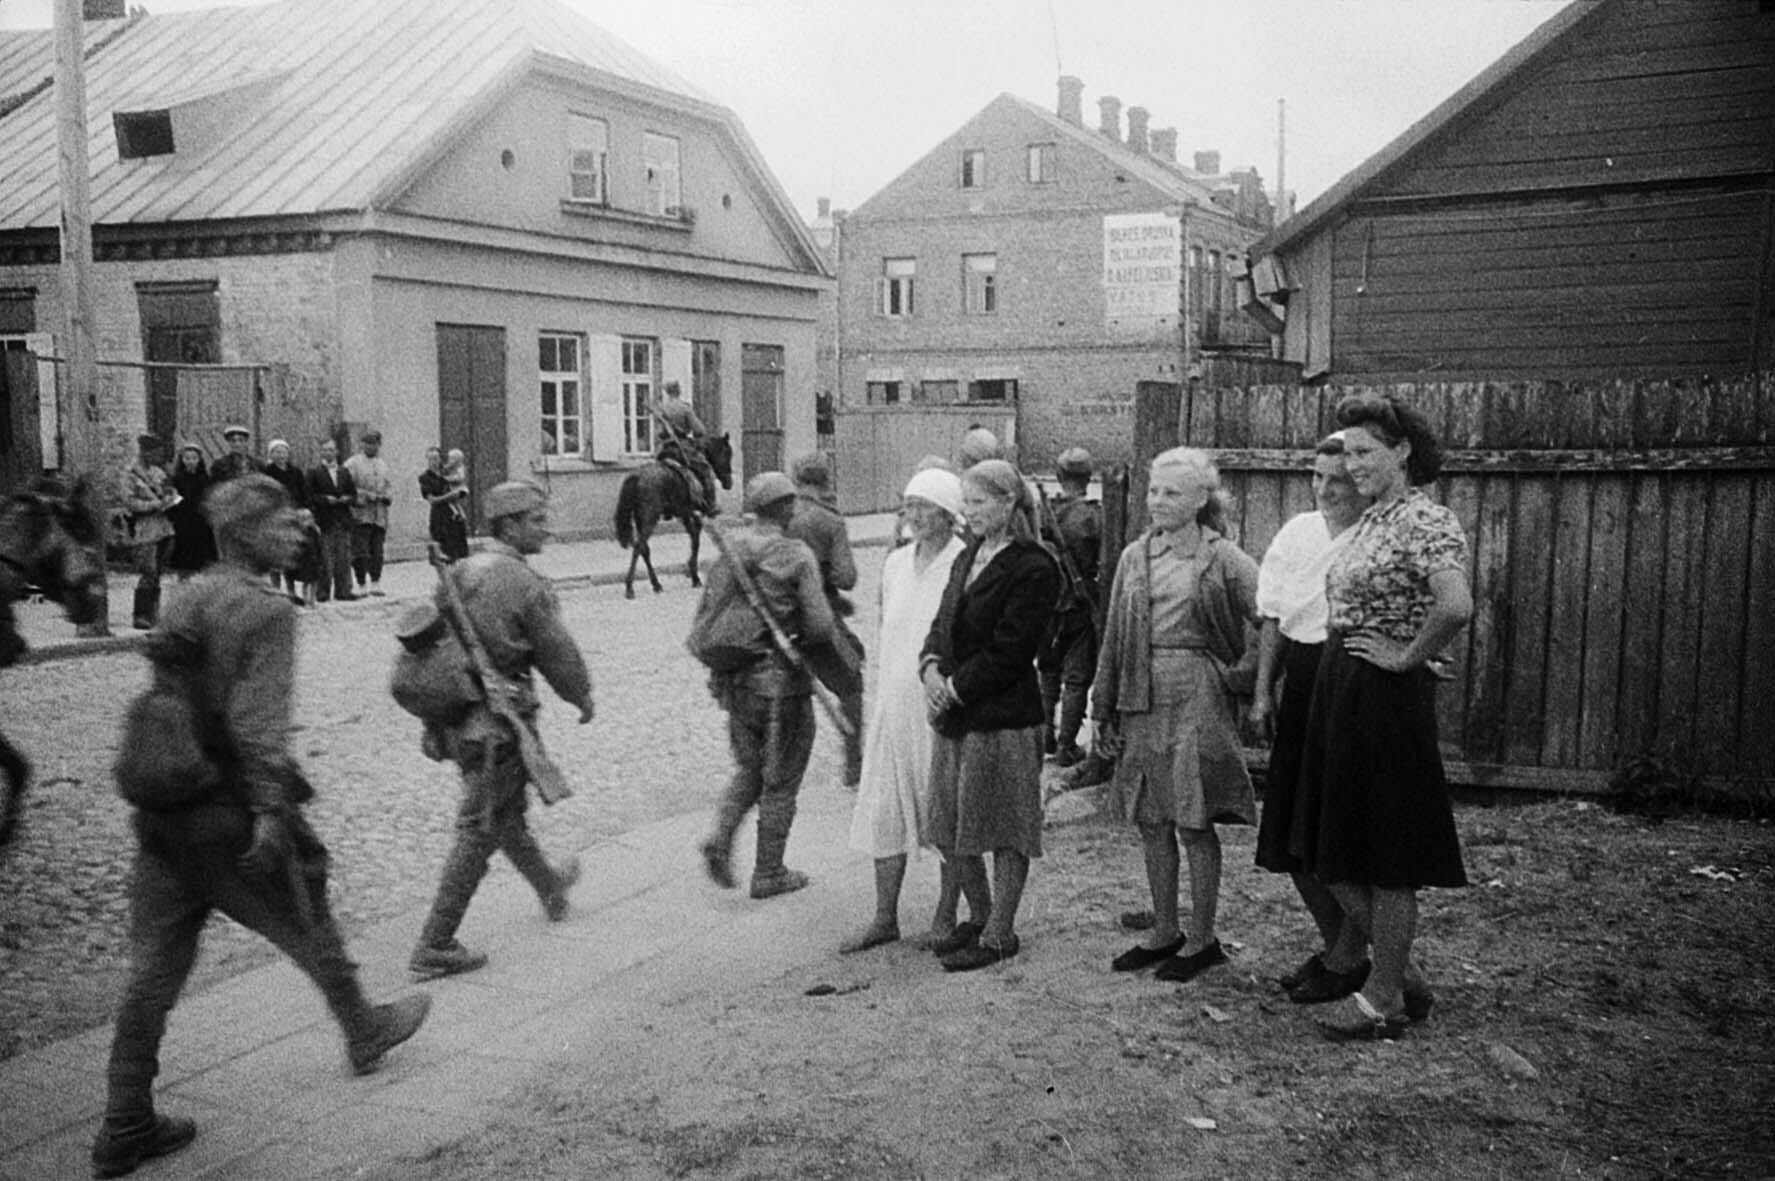 Fotografie: Zivilbevölkerung und sowjetische Truppen, Panevezys, Litauen, 23. Juli 1944 (Museum Berlin-Karlshorst RR-P)